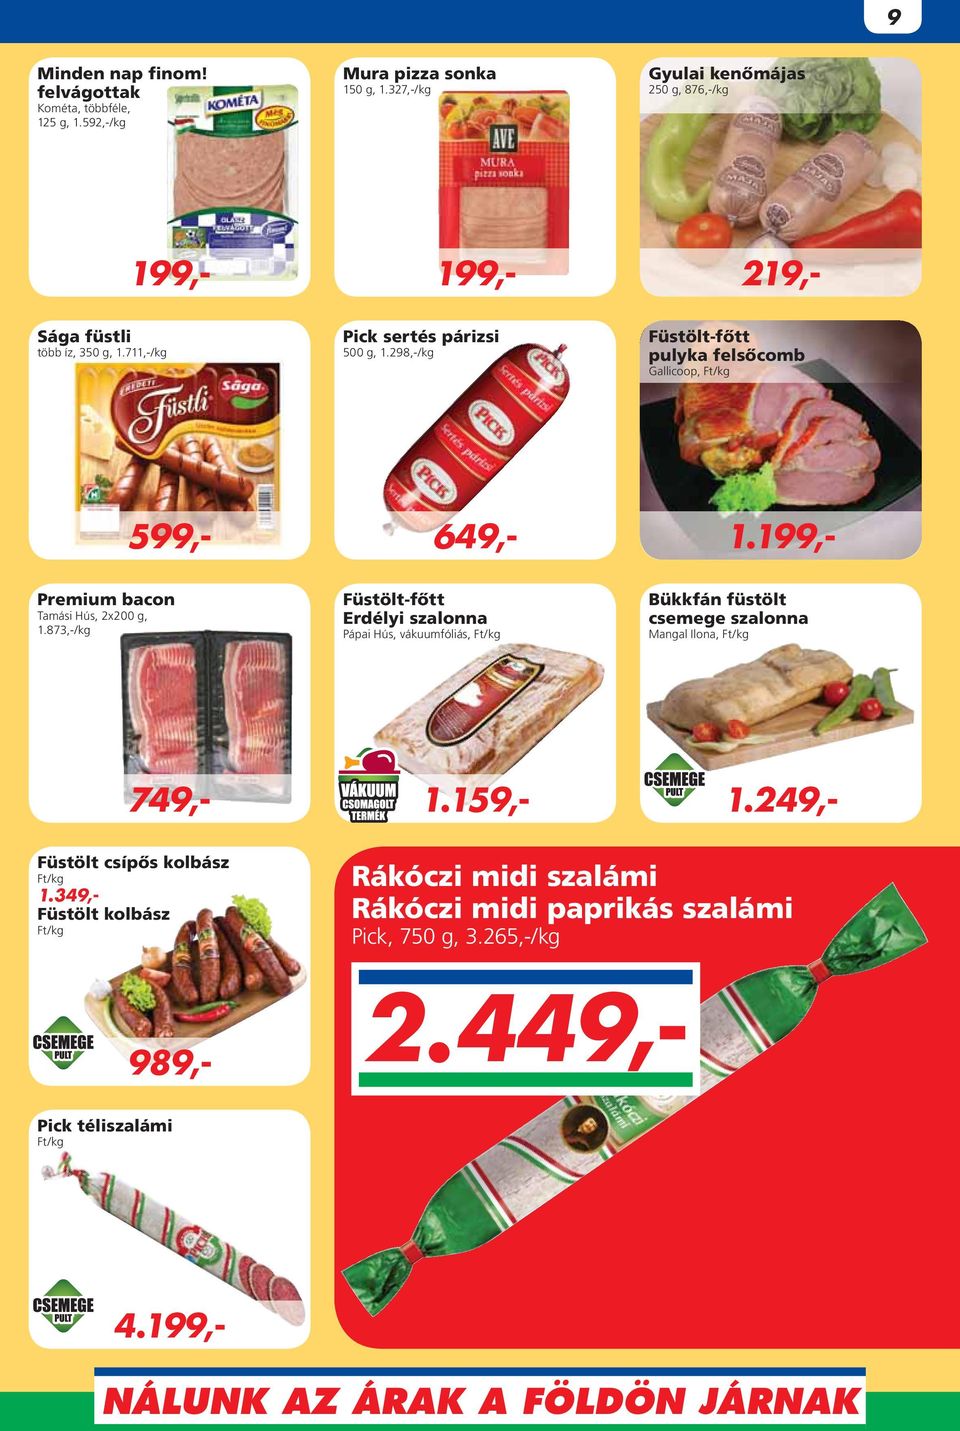 298,-/kg Füstölt-fôtt pulyka felsôcomb Gallicoop, Premium bacon Tamási Hús, 2x200 g, 1.